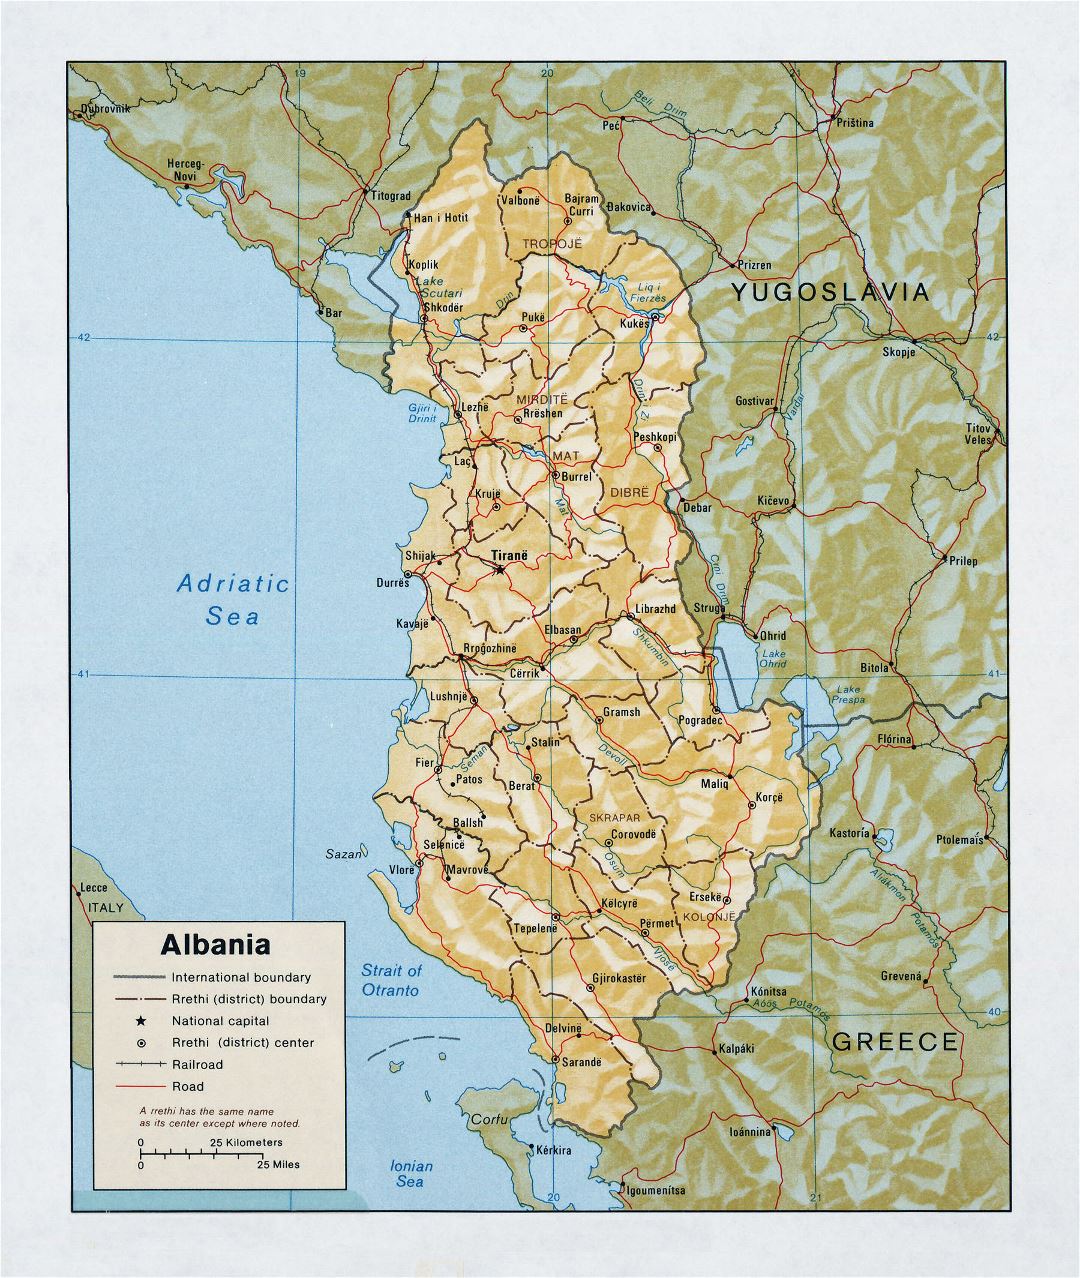 Mapa político y administrativo detallada grande de Albania con alivio, las carreteras y las principales ciudades